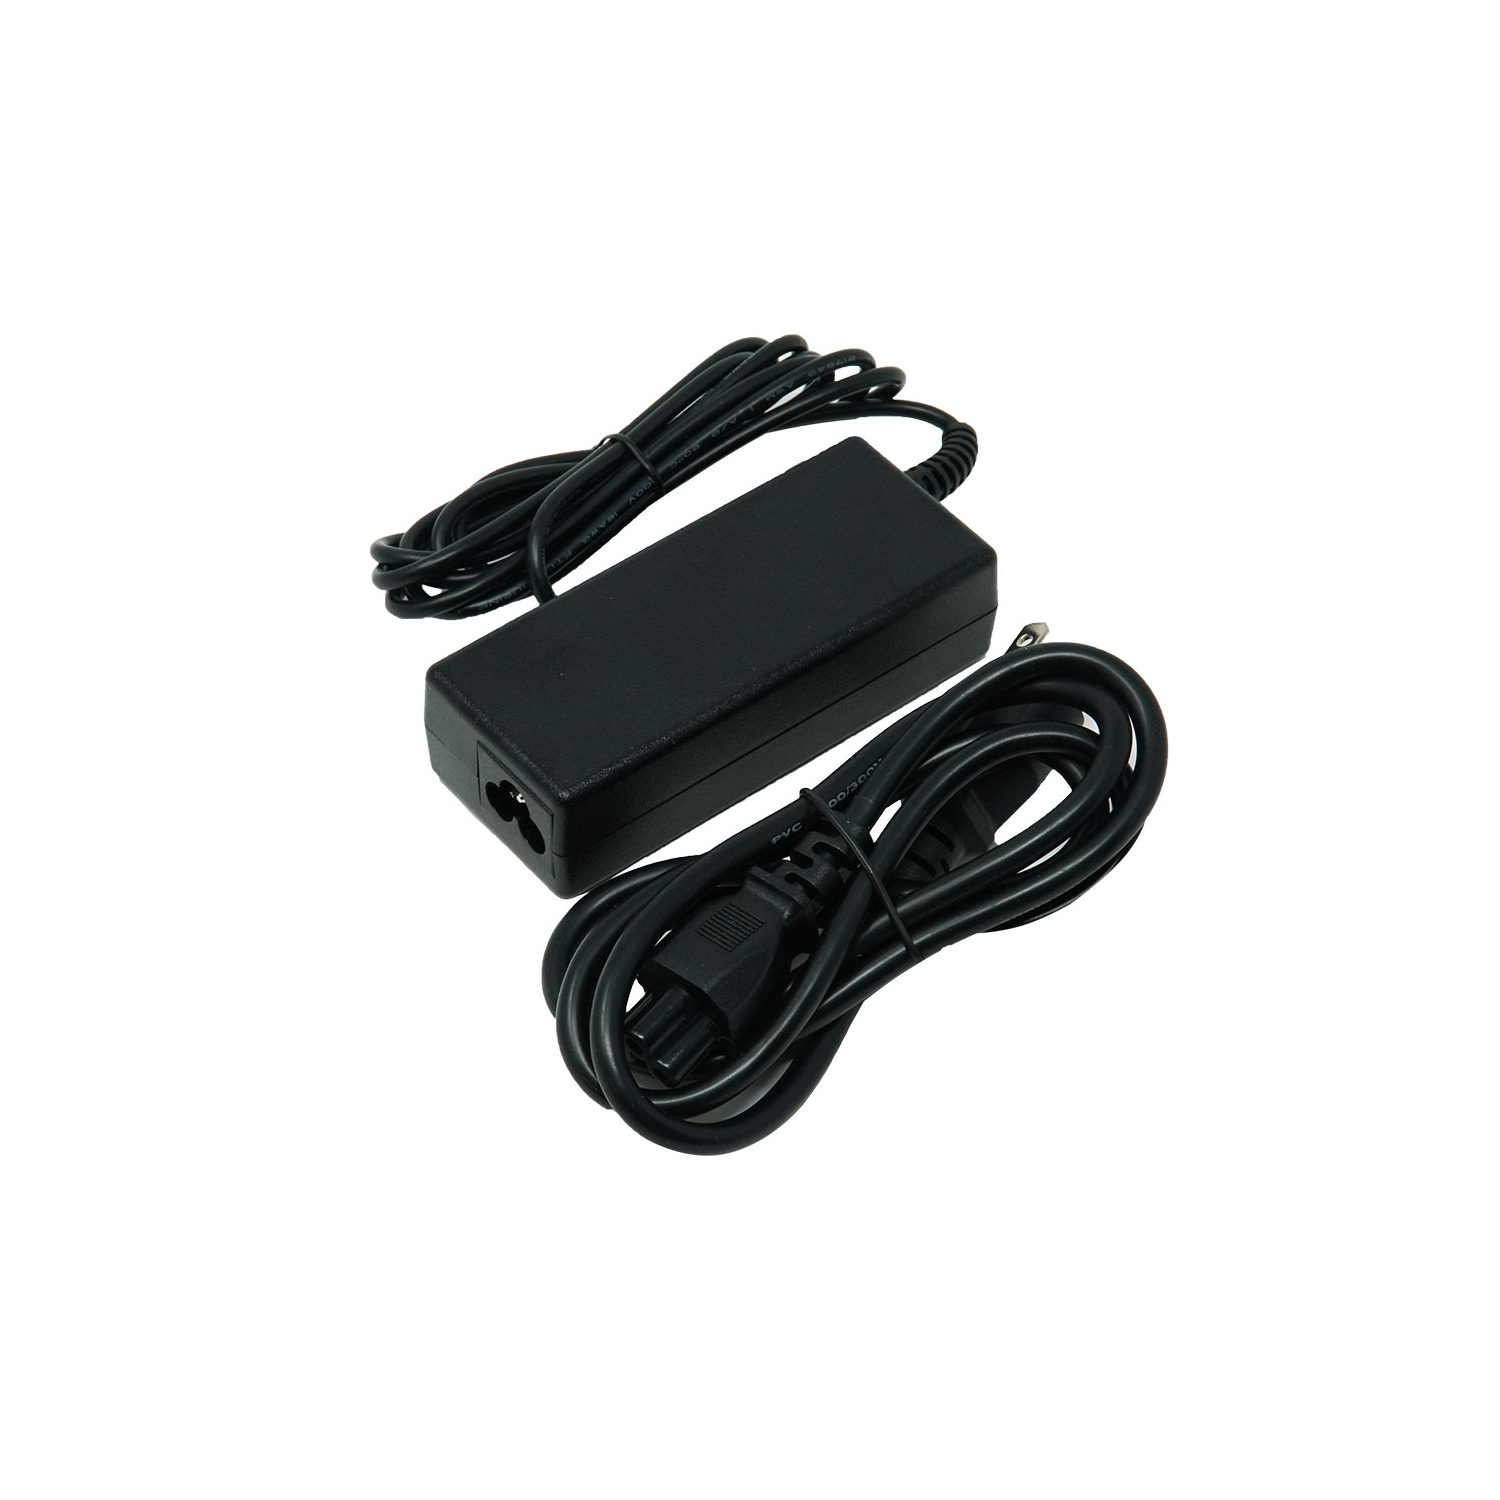 Dr. Battery - Notebook Adapter for HP Pavilion DV4000 / DV5000 / DV6000 / DV6500 / 338136-001 / 357978-001 - Free Shipping